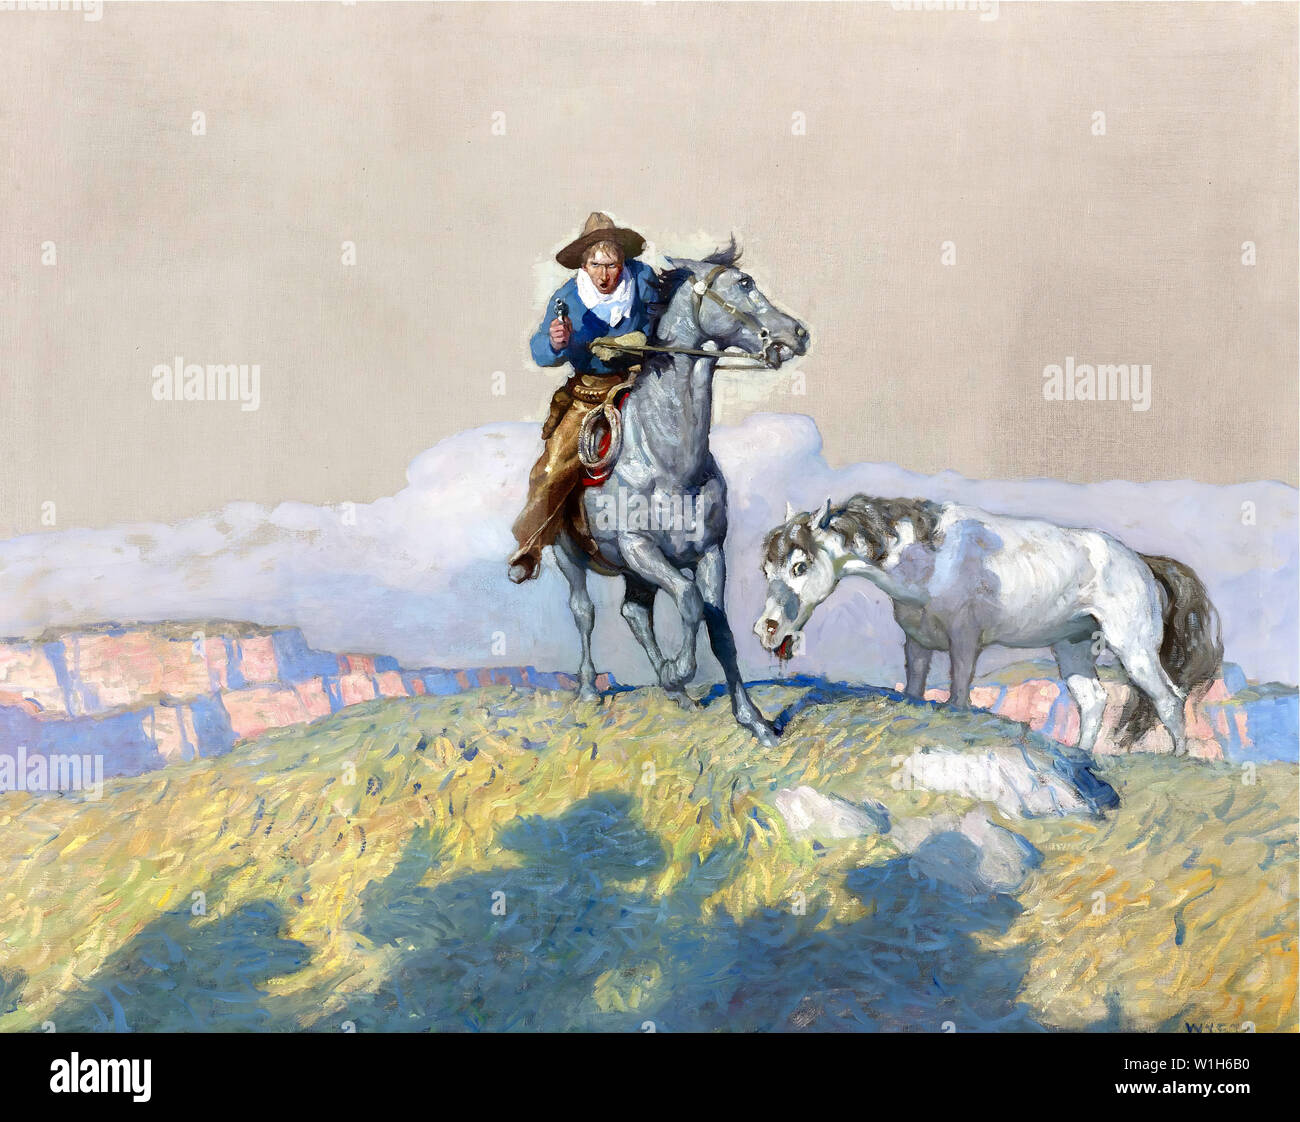 Cowboy on Horseback Riding the Range by NC Wyeth Stock Photo